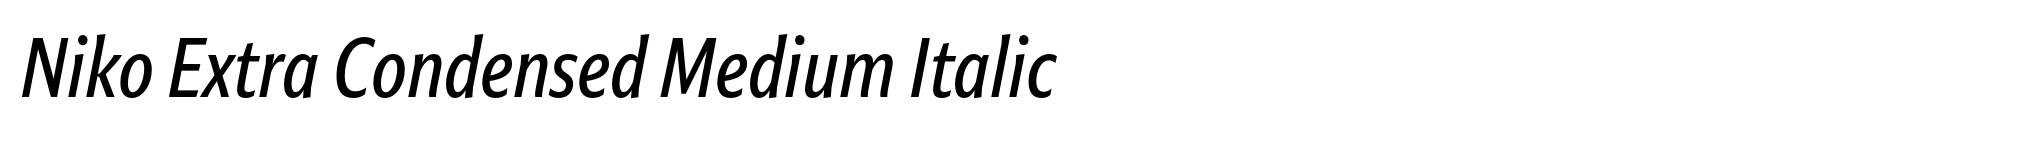 Niko Extra Condensed Medium Italic image